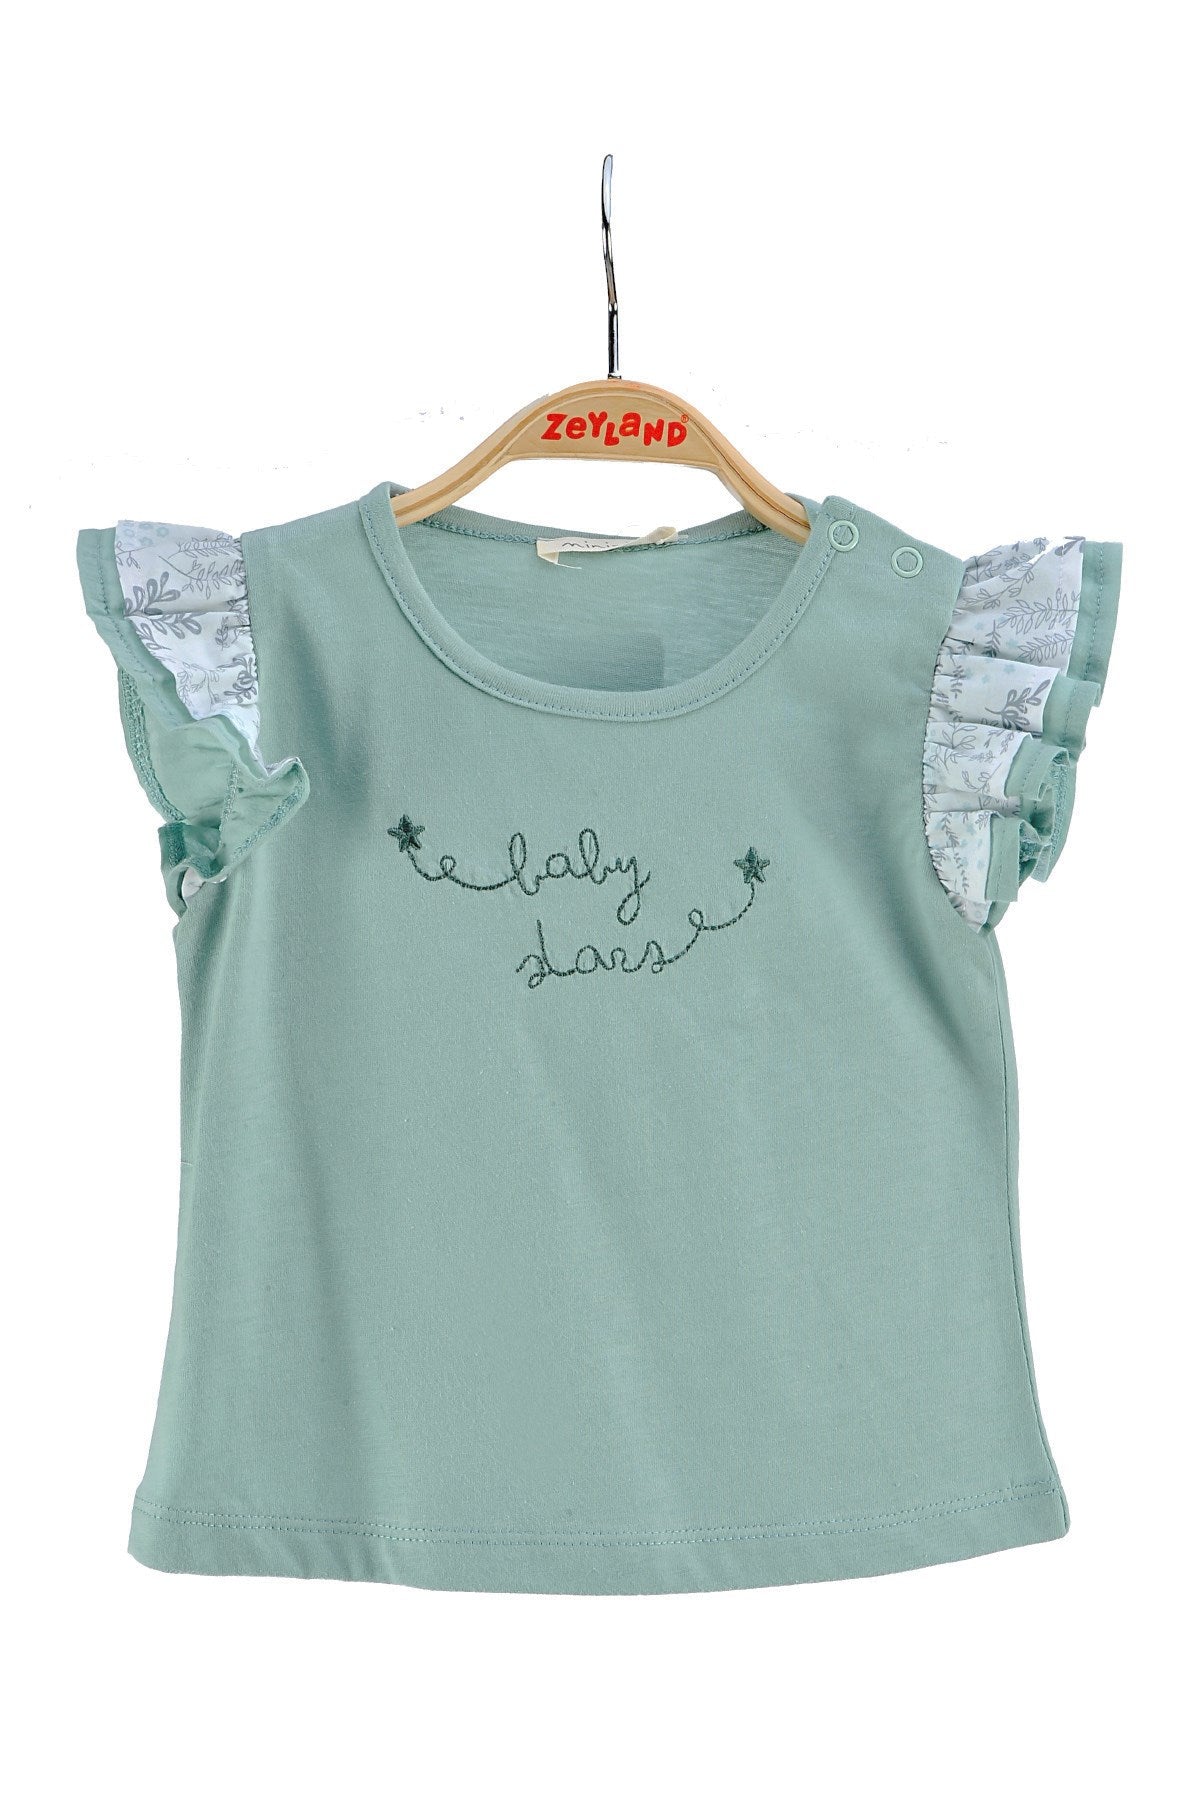 Kız Bebek Yeşil Fırfırlı Baskılı T-Shirt (6ay-4yaş)-0